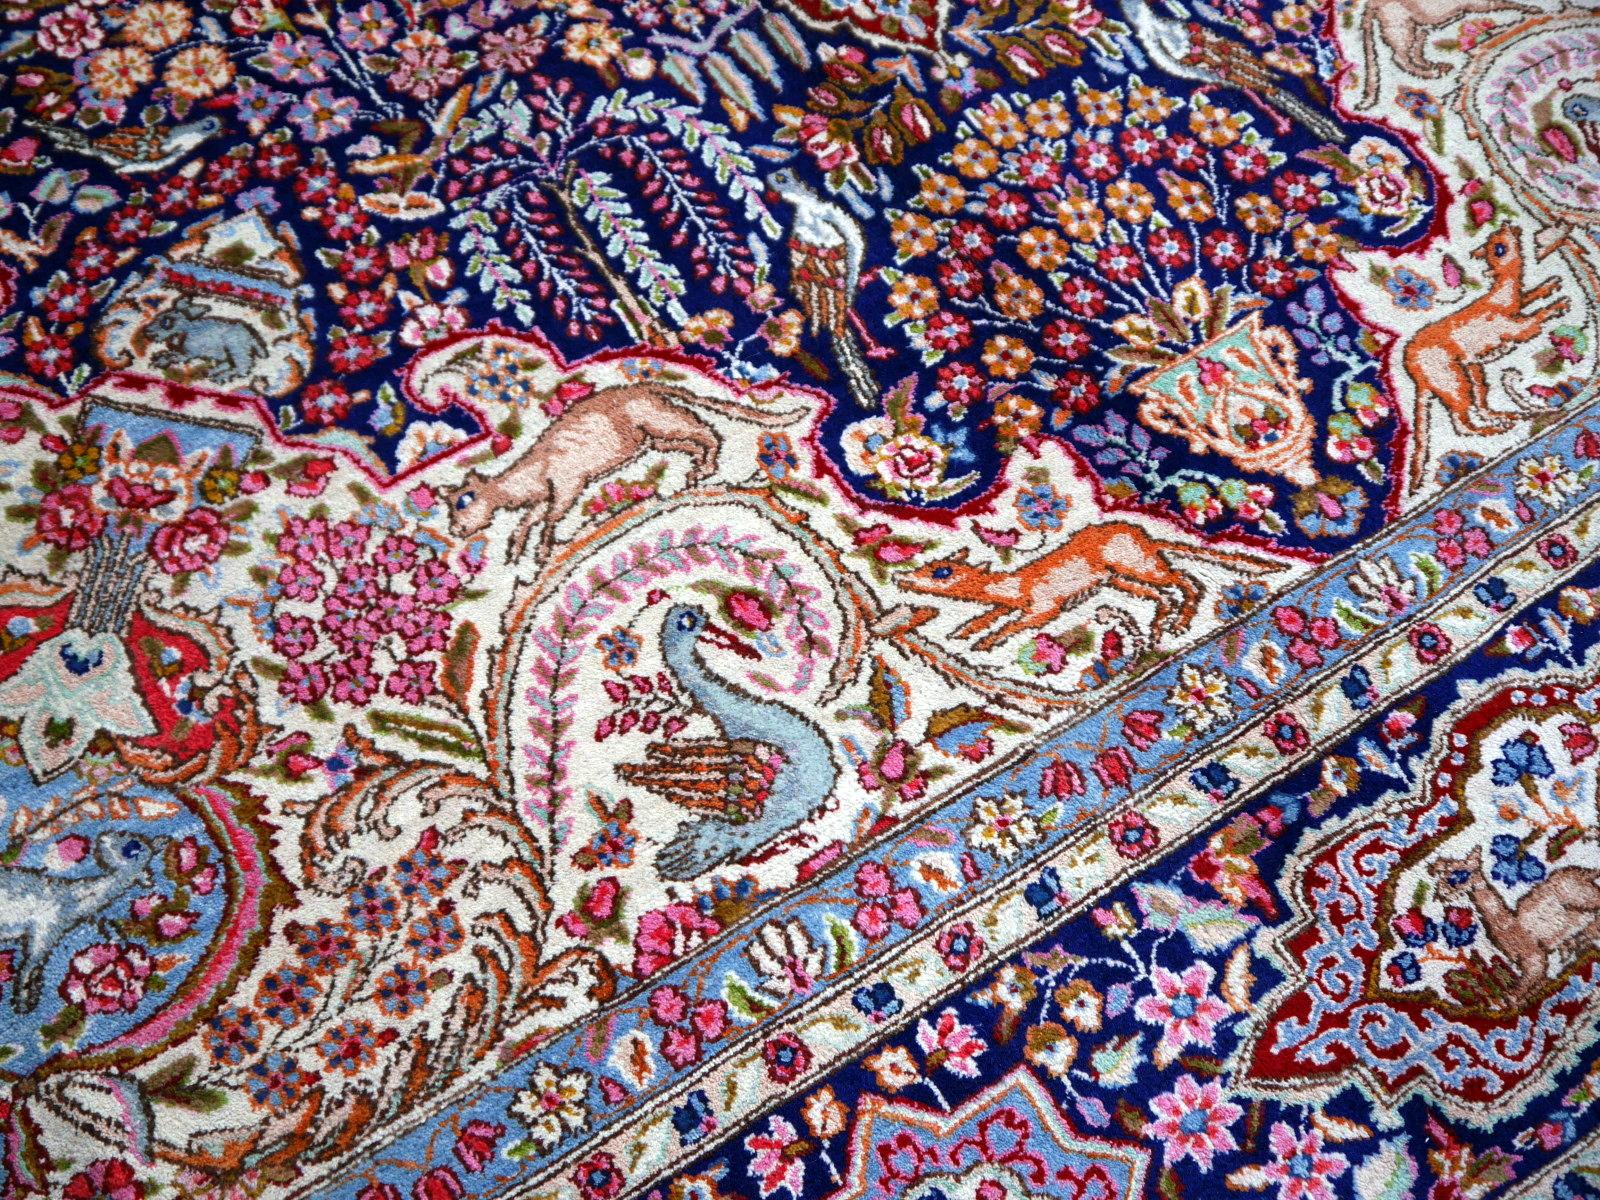 Un beau tapis vintage, noué à la main, avec un design floral de chasse oriental traditionnel. Taille 13 x 10 ft / 400 x 300 cm.

Ce superbe tapis présente des couleurs vibrantes et un design décoratif aux riches motifs. Des fleurs, des lions, des